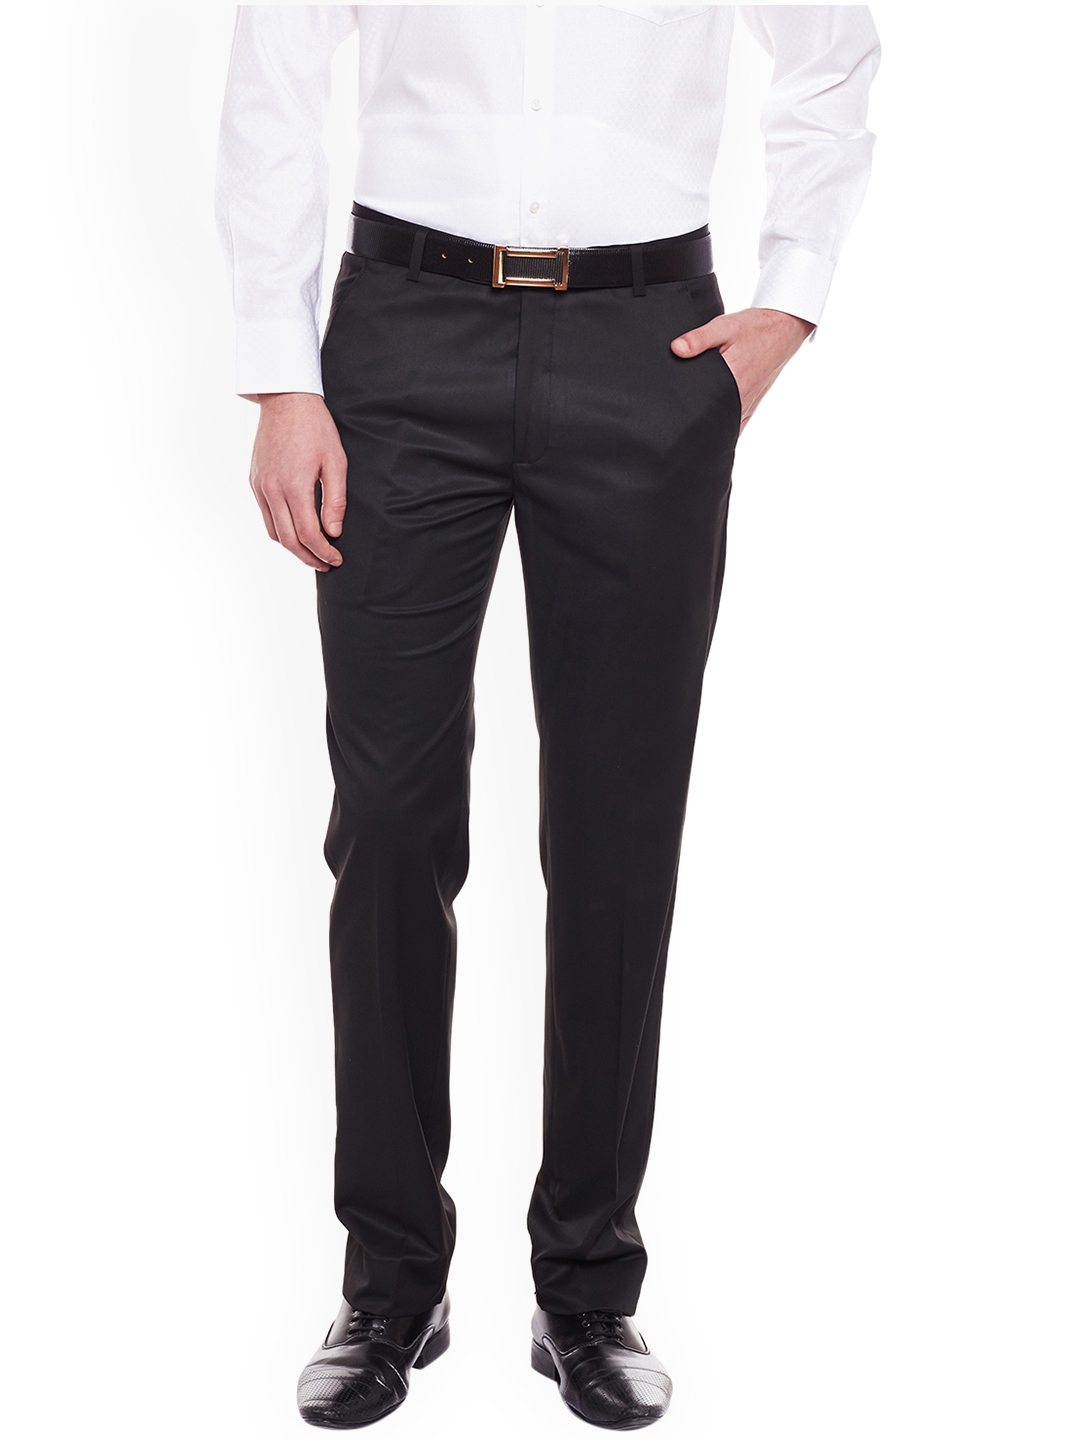 Buy Black Trousers  Pants for Men by LA MODE Online  Ajiocom